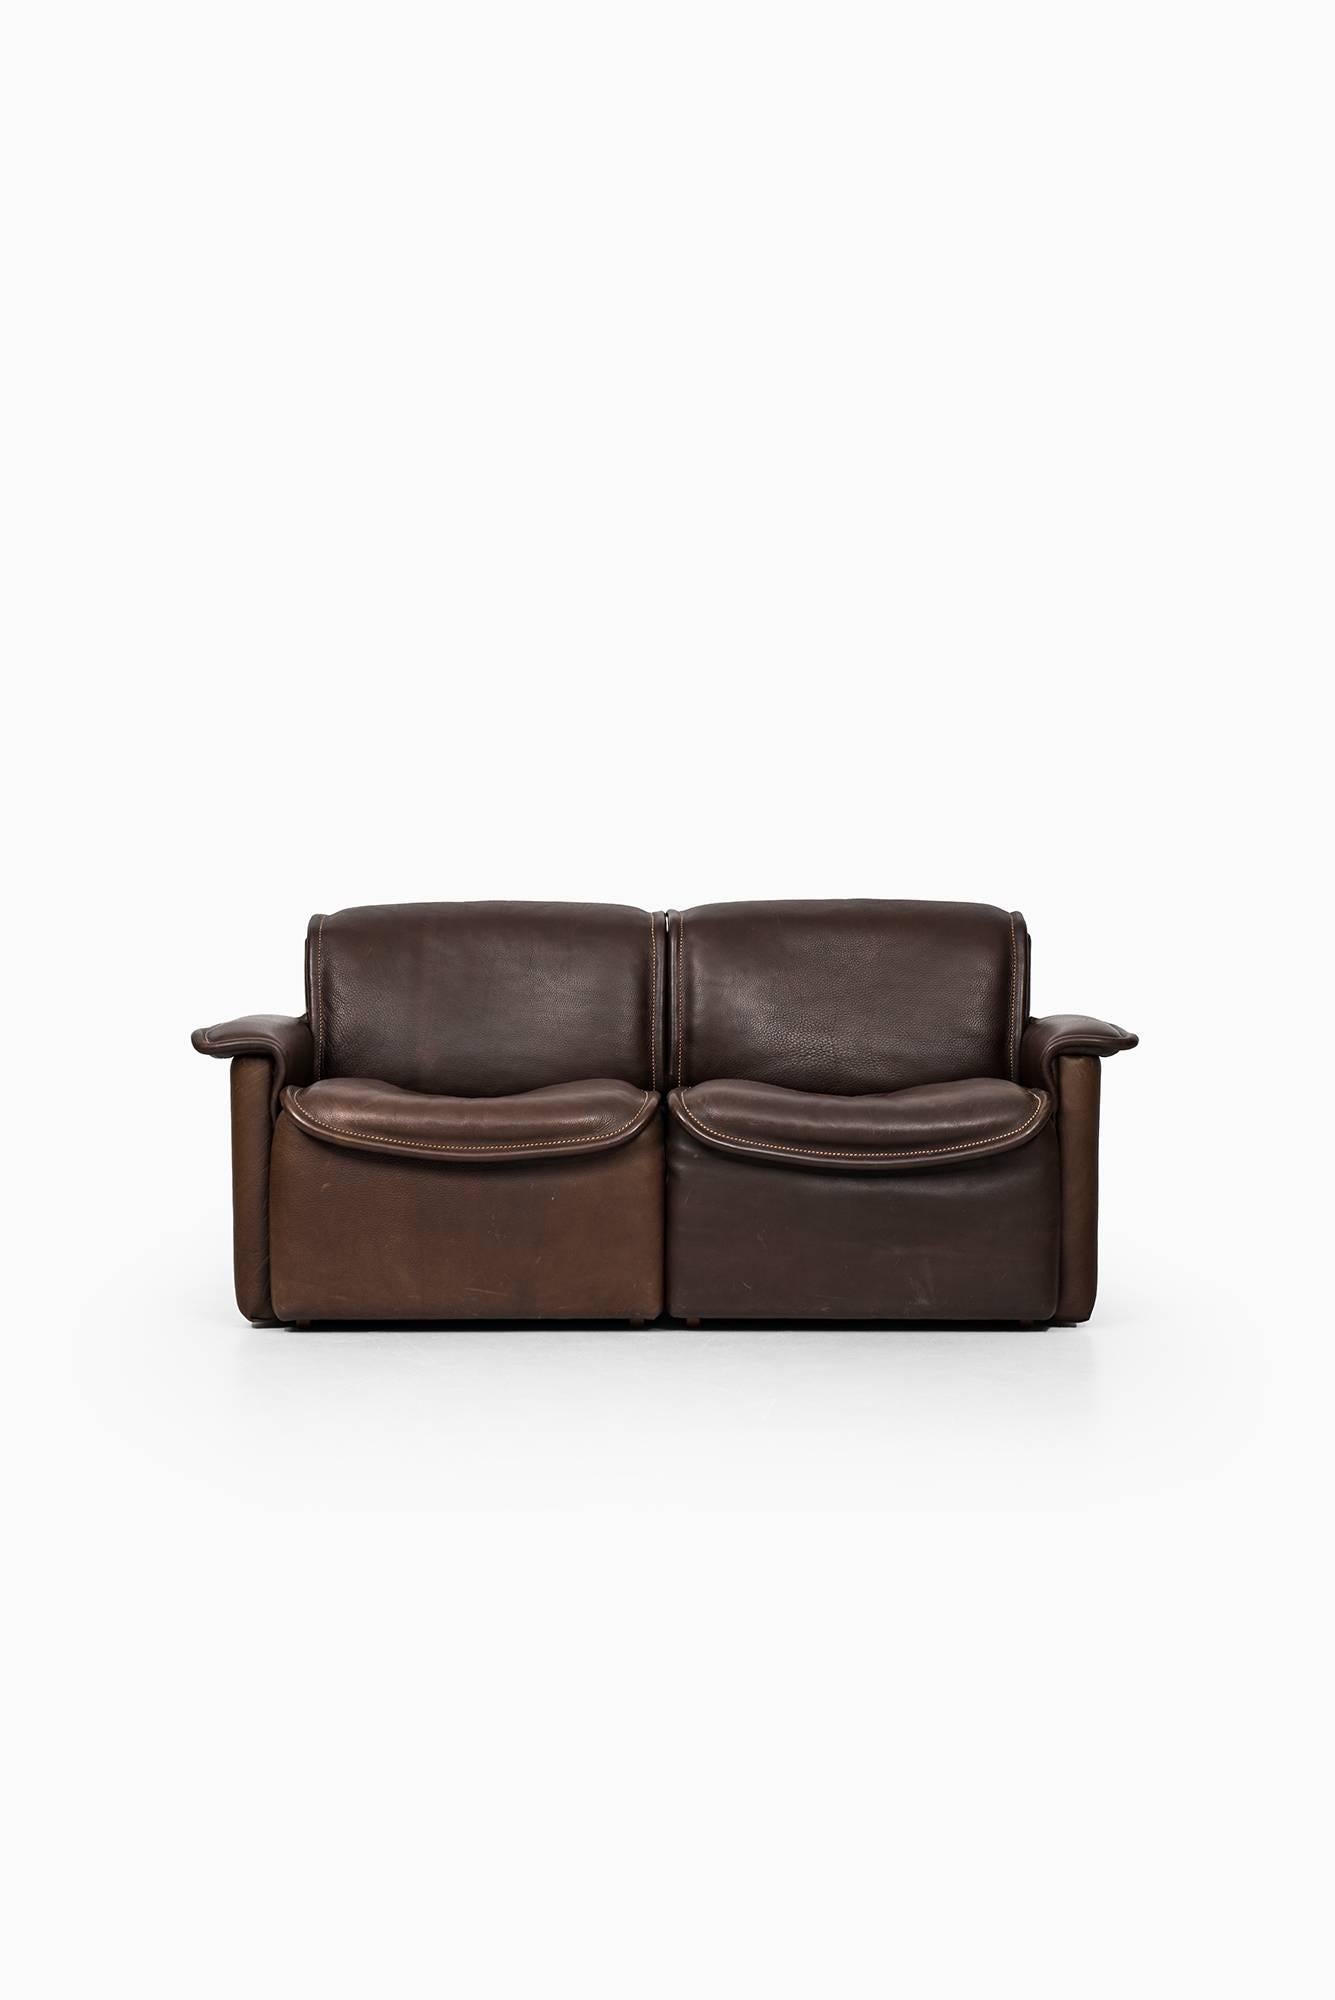 Leather De Sede Two-Seat Sofa Model Ds-12 by De Sede in Switzerland